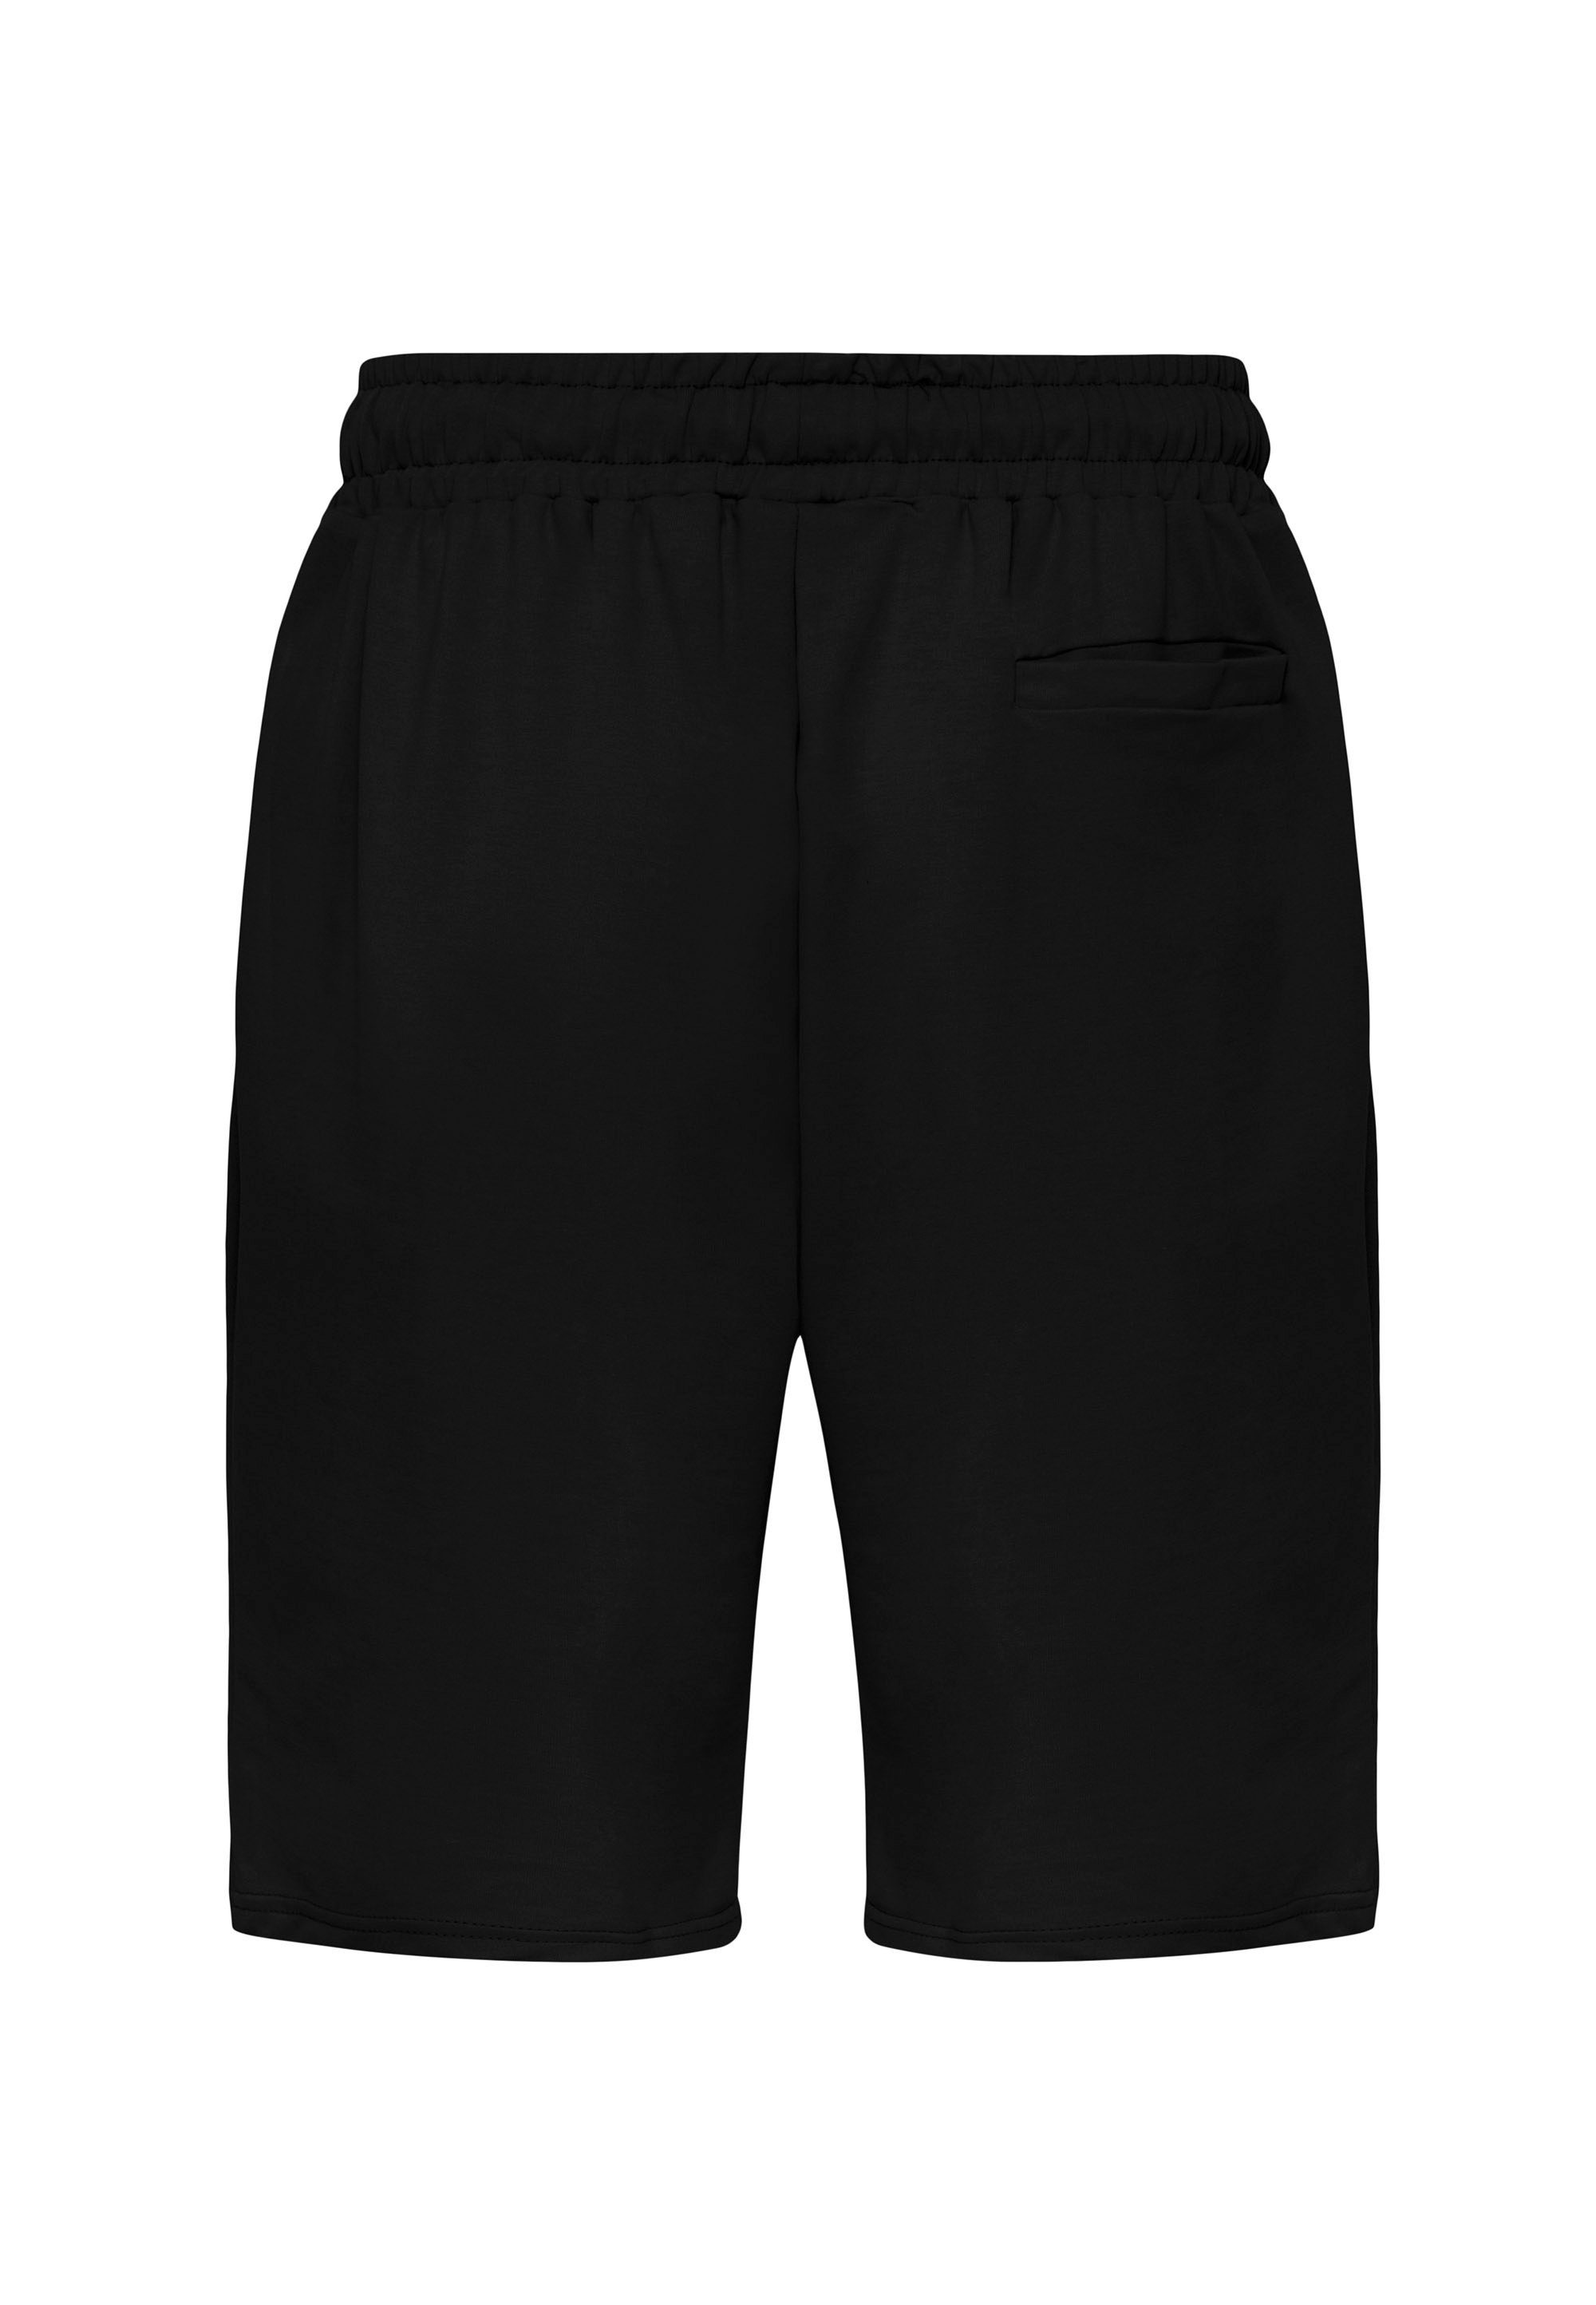 RedBridge Shorts Weymouth im dezenten, sportlichen schwarz Design